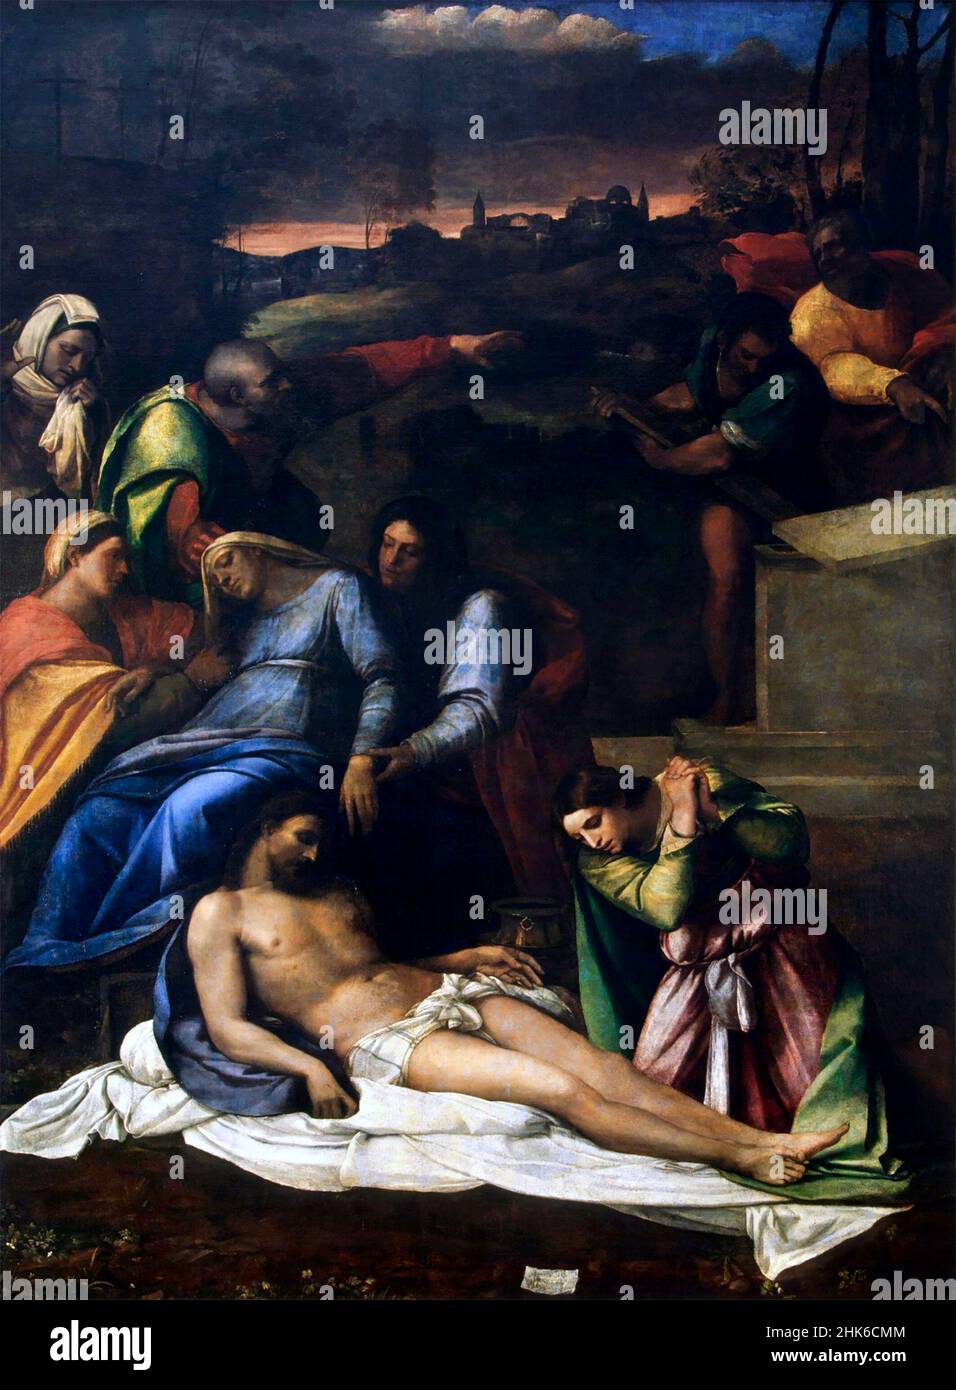 La Lamentation du peintre italien Sebastiano del Piombo (c.1485-1547), huile sur toile, 1516 Banque D'Images